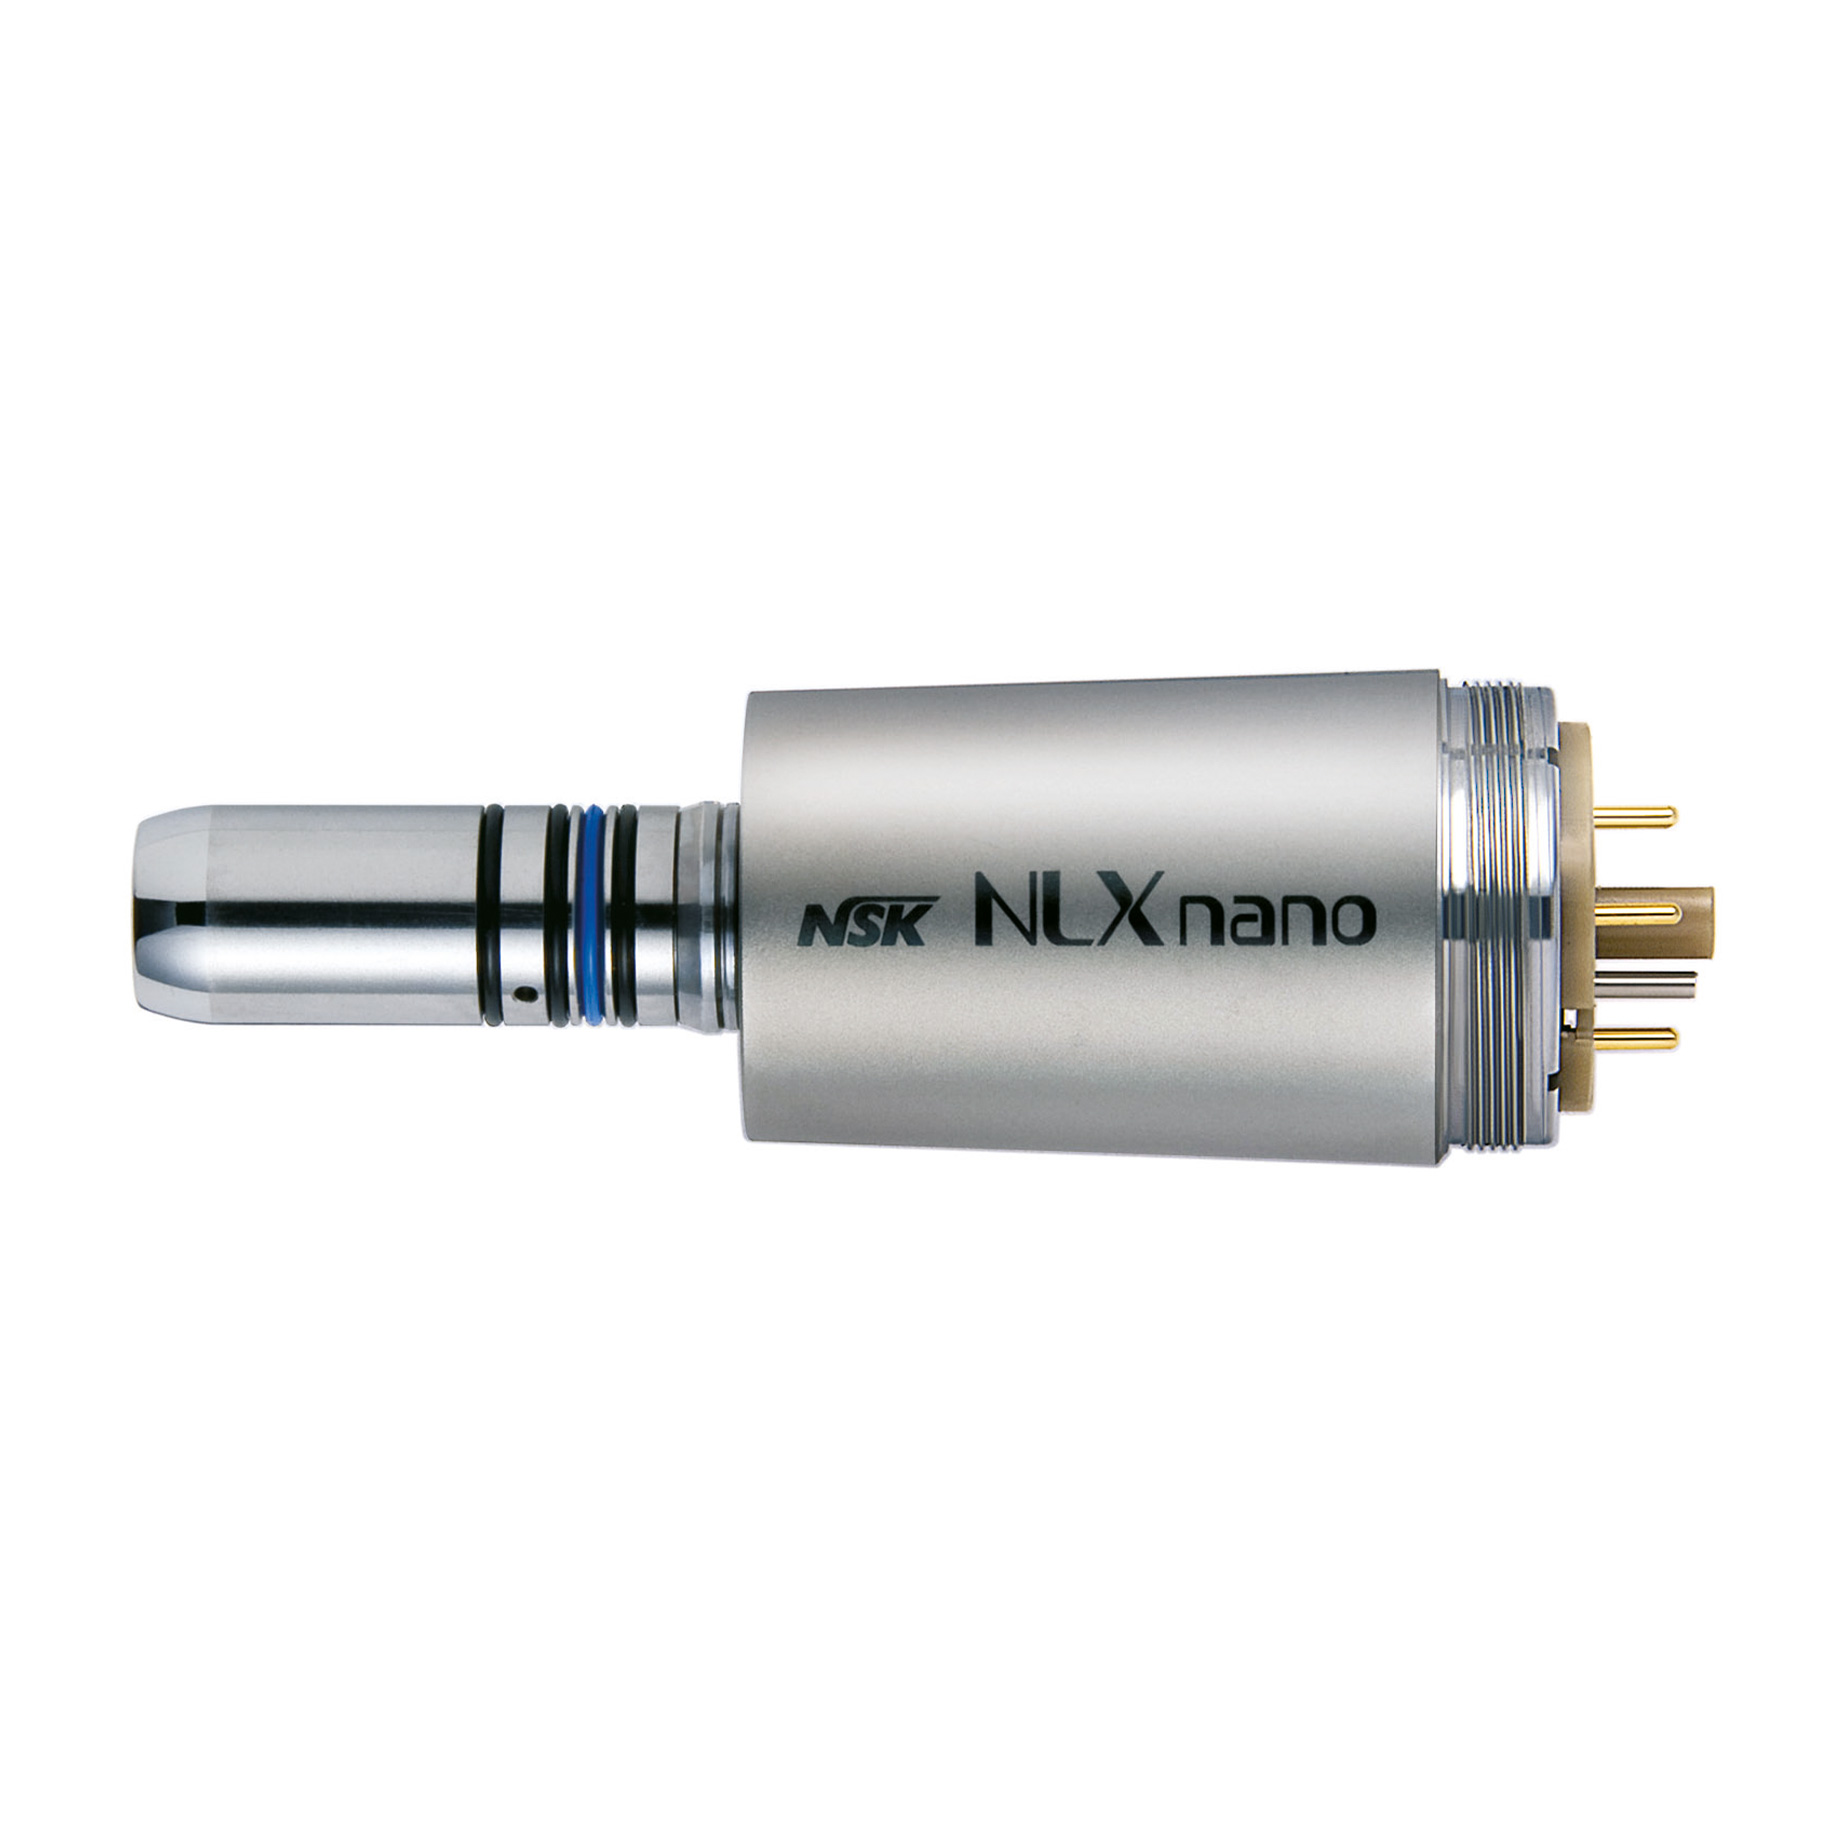 NSK NLX Nano Micromotor 